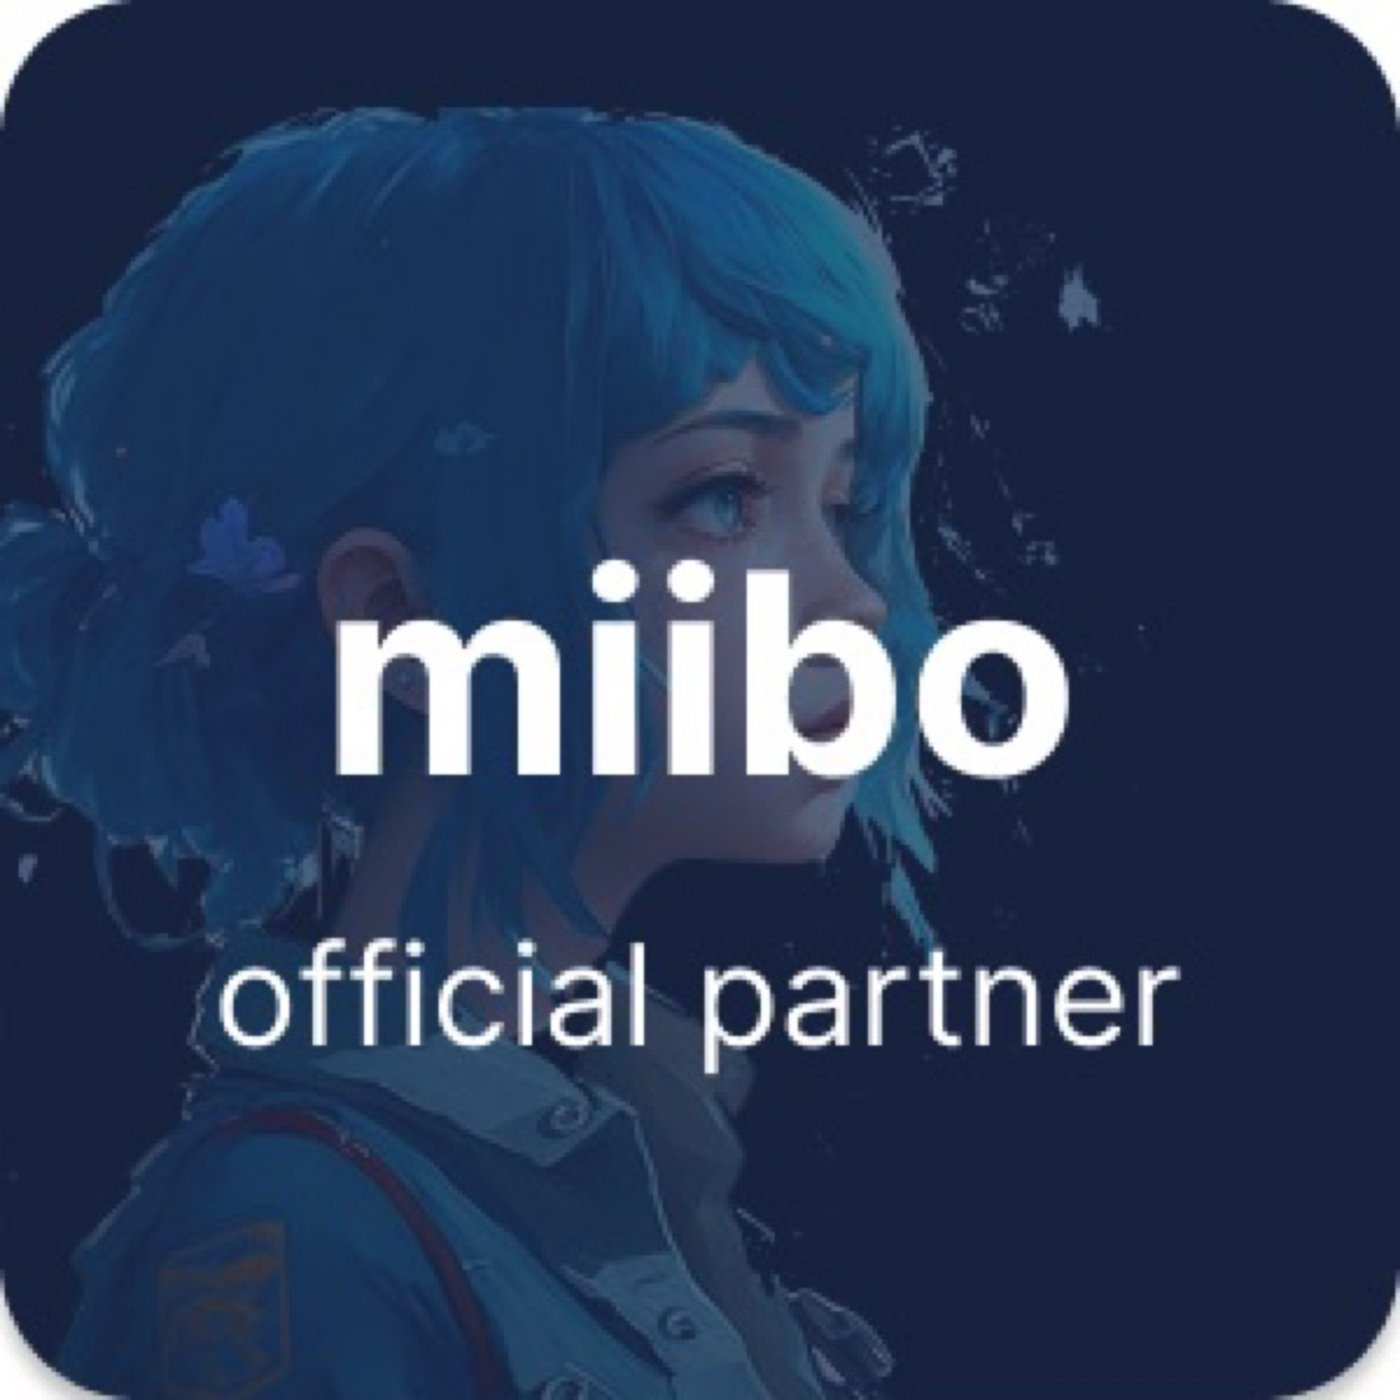 株式会社miibo公式AI開発パートナー miibo partner就任